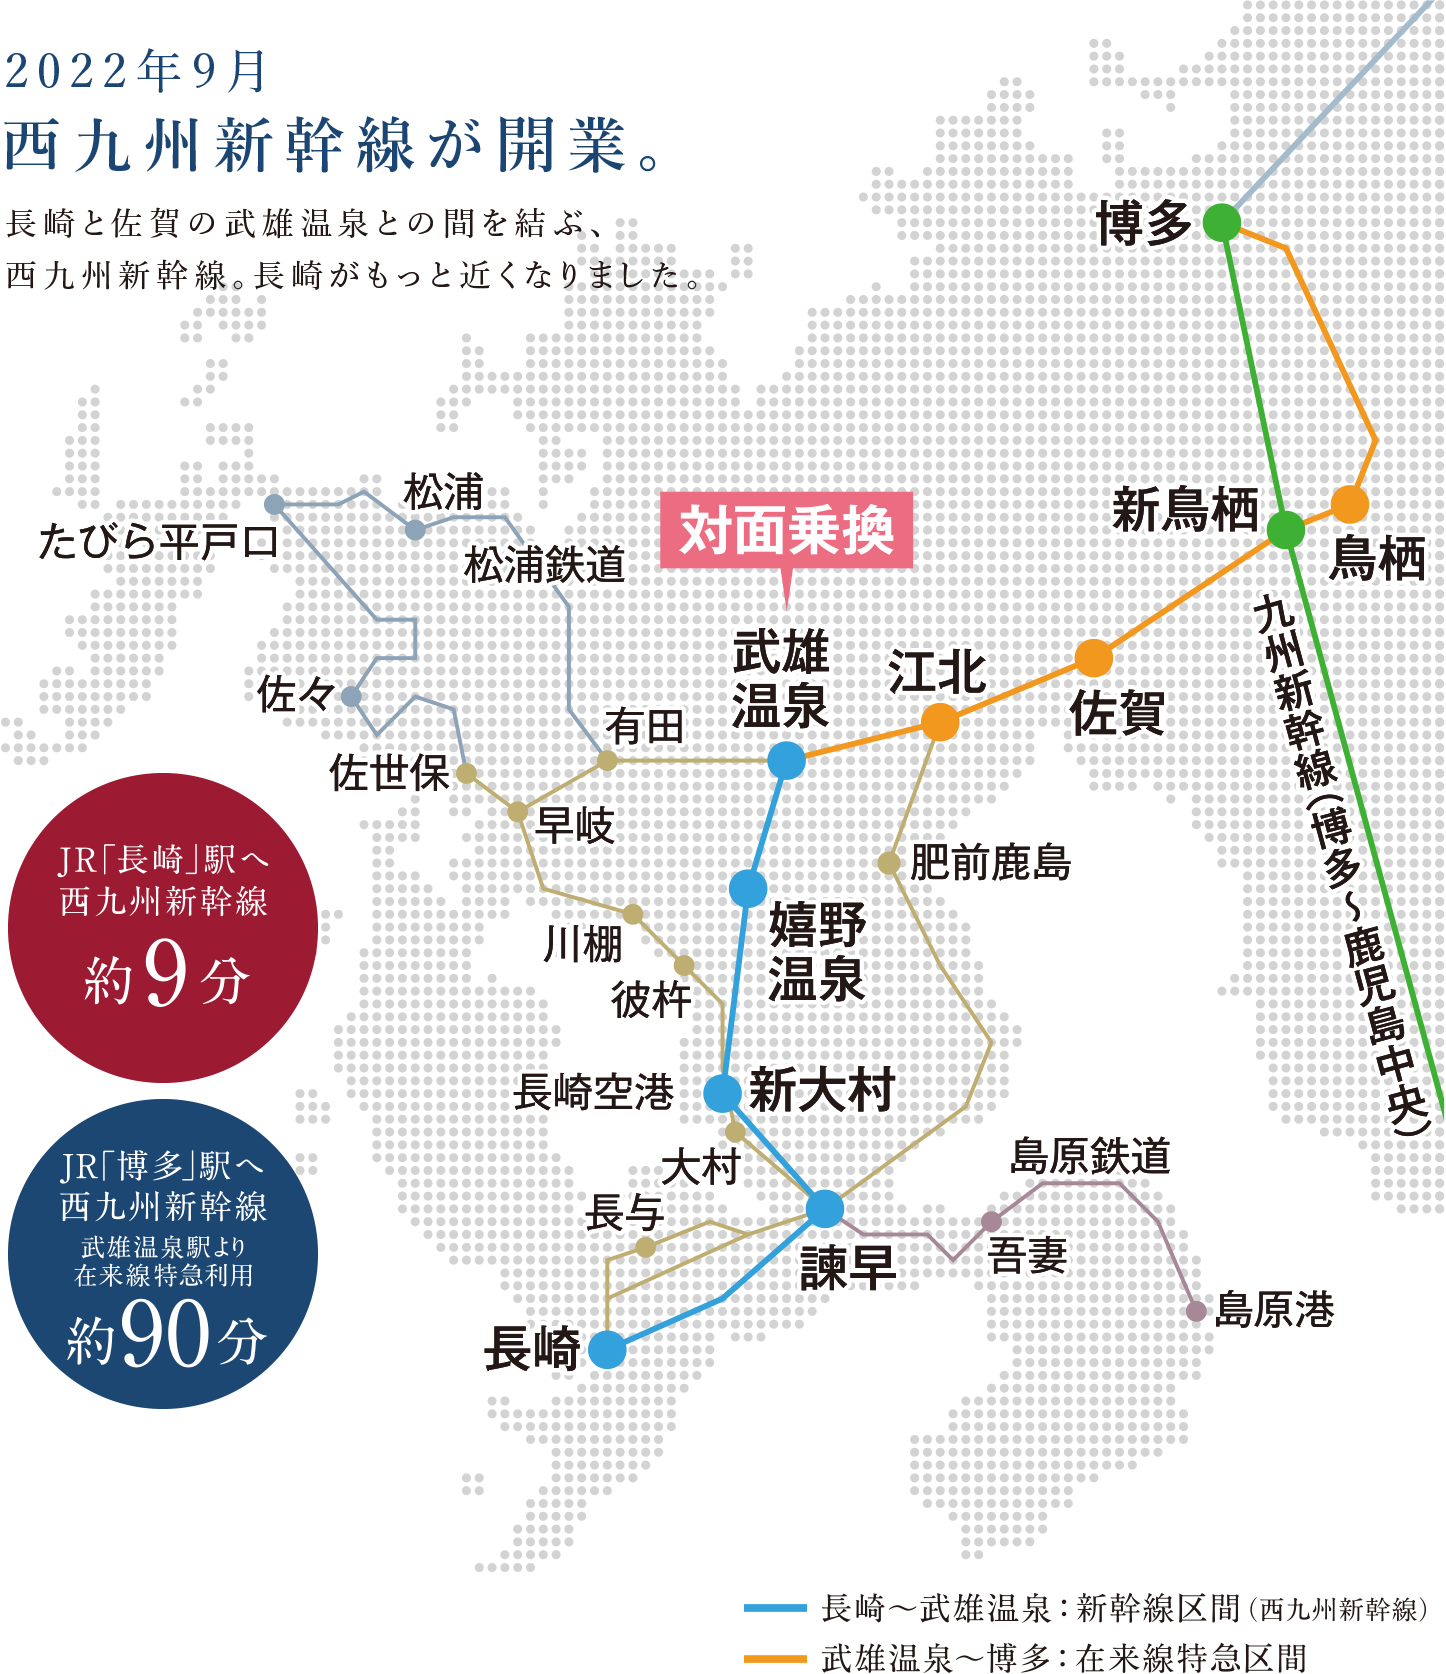 2022年9月 西九州新幹線が開業